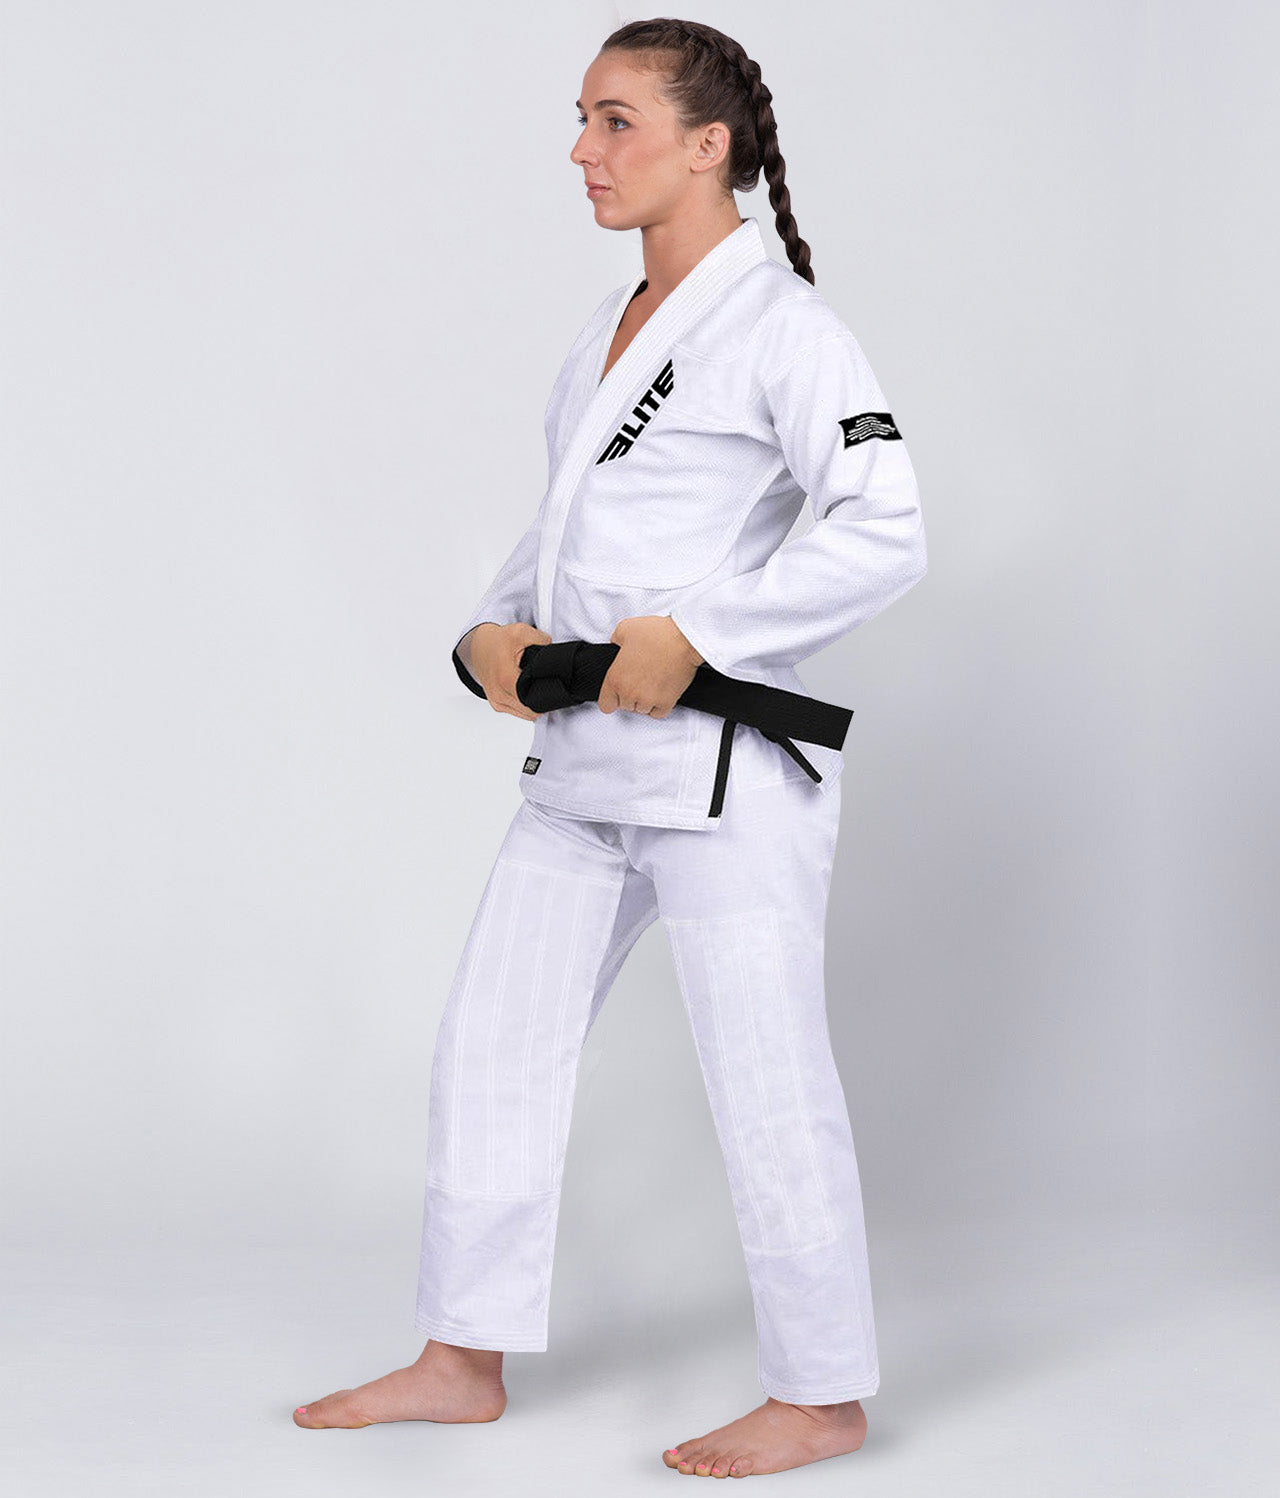 Elite Sports Women's Core White Brazilian Jiu Jitsu BJJ Gi Side View